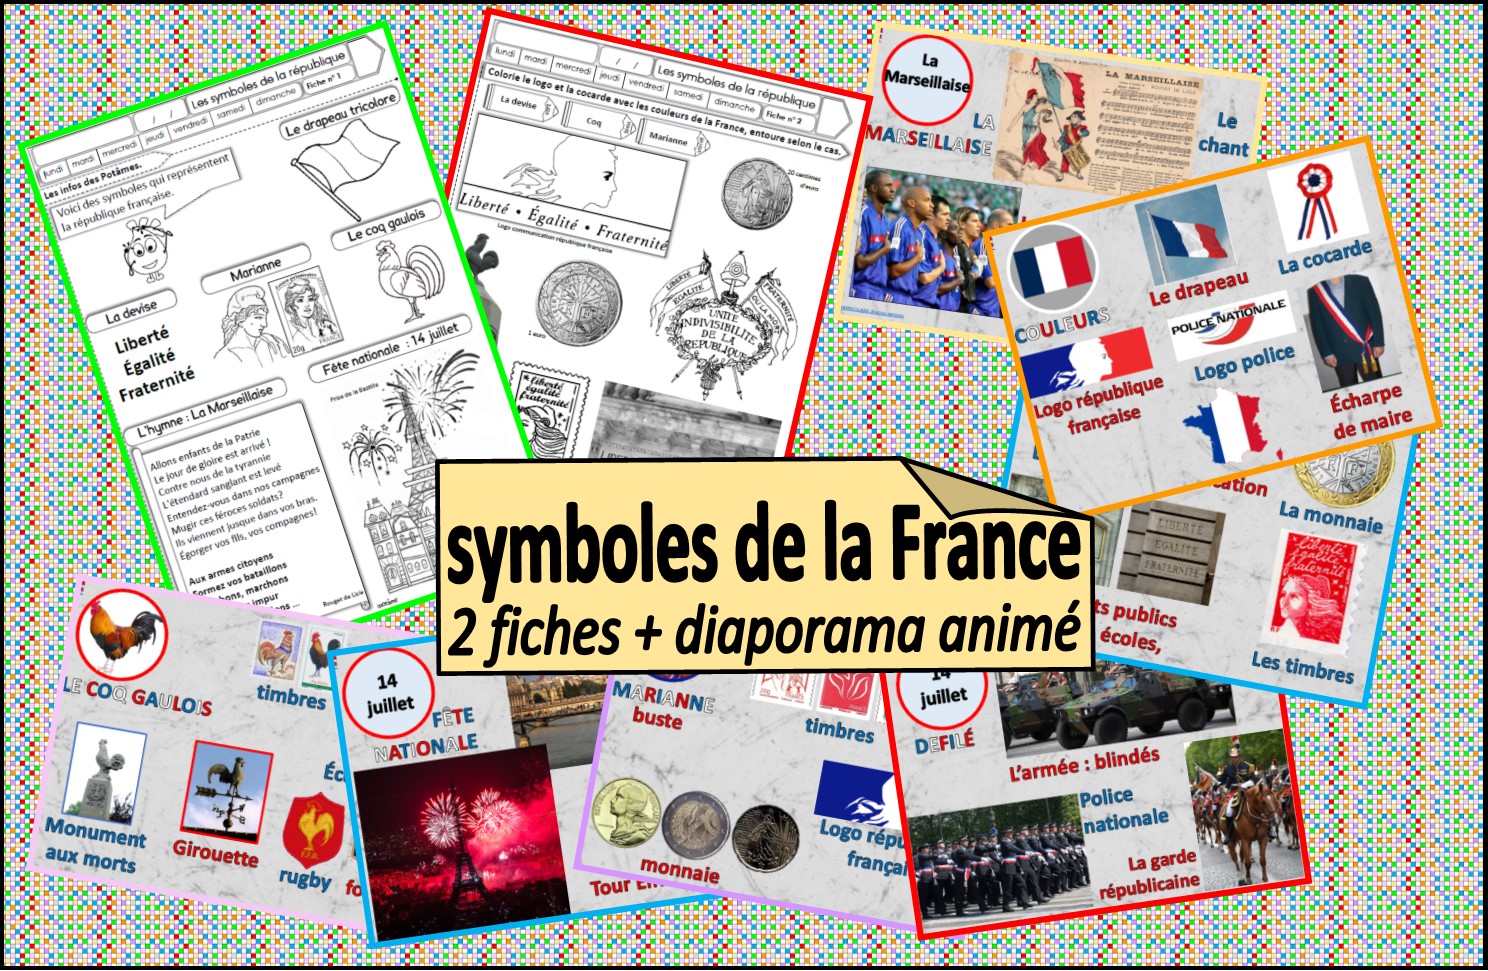 IPOTÂME.TÂME: Les symboles de la France